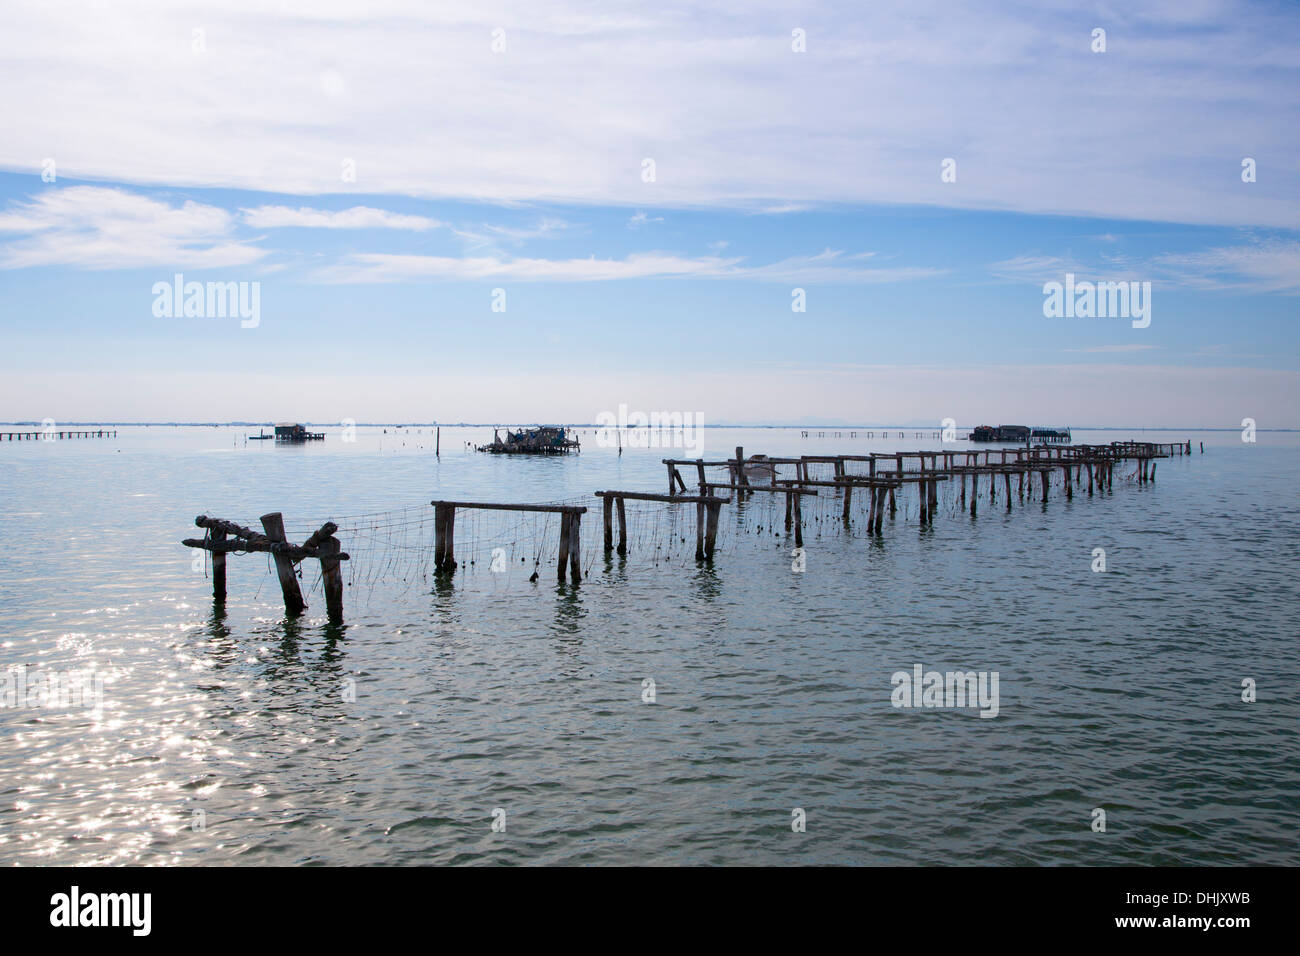 Le reti da pesca nella laguna di Venezia, Pellestrina, Veneto, Italia, Europa Foto Stock